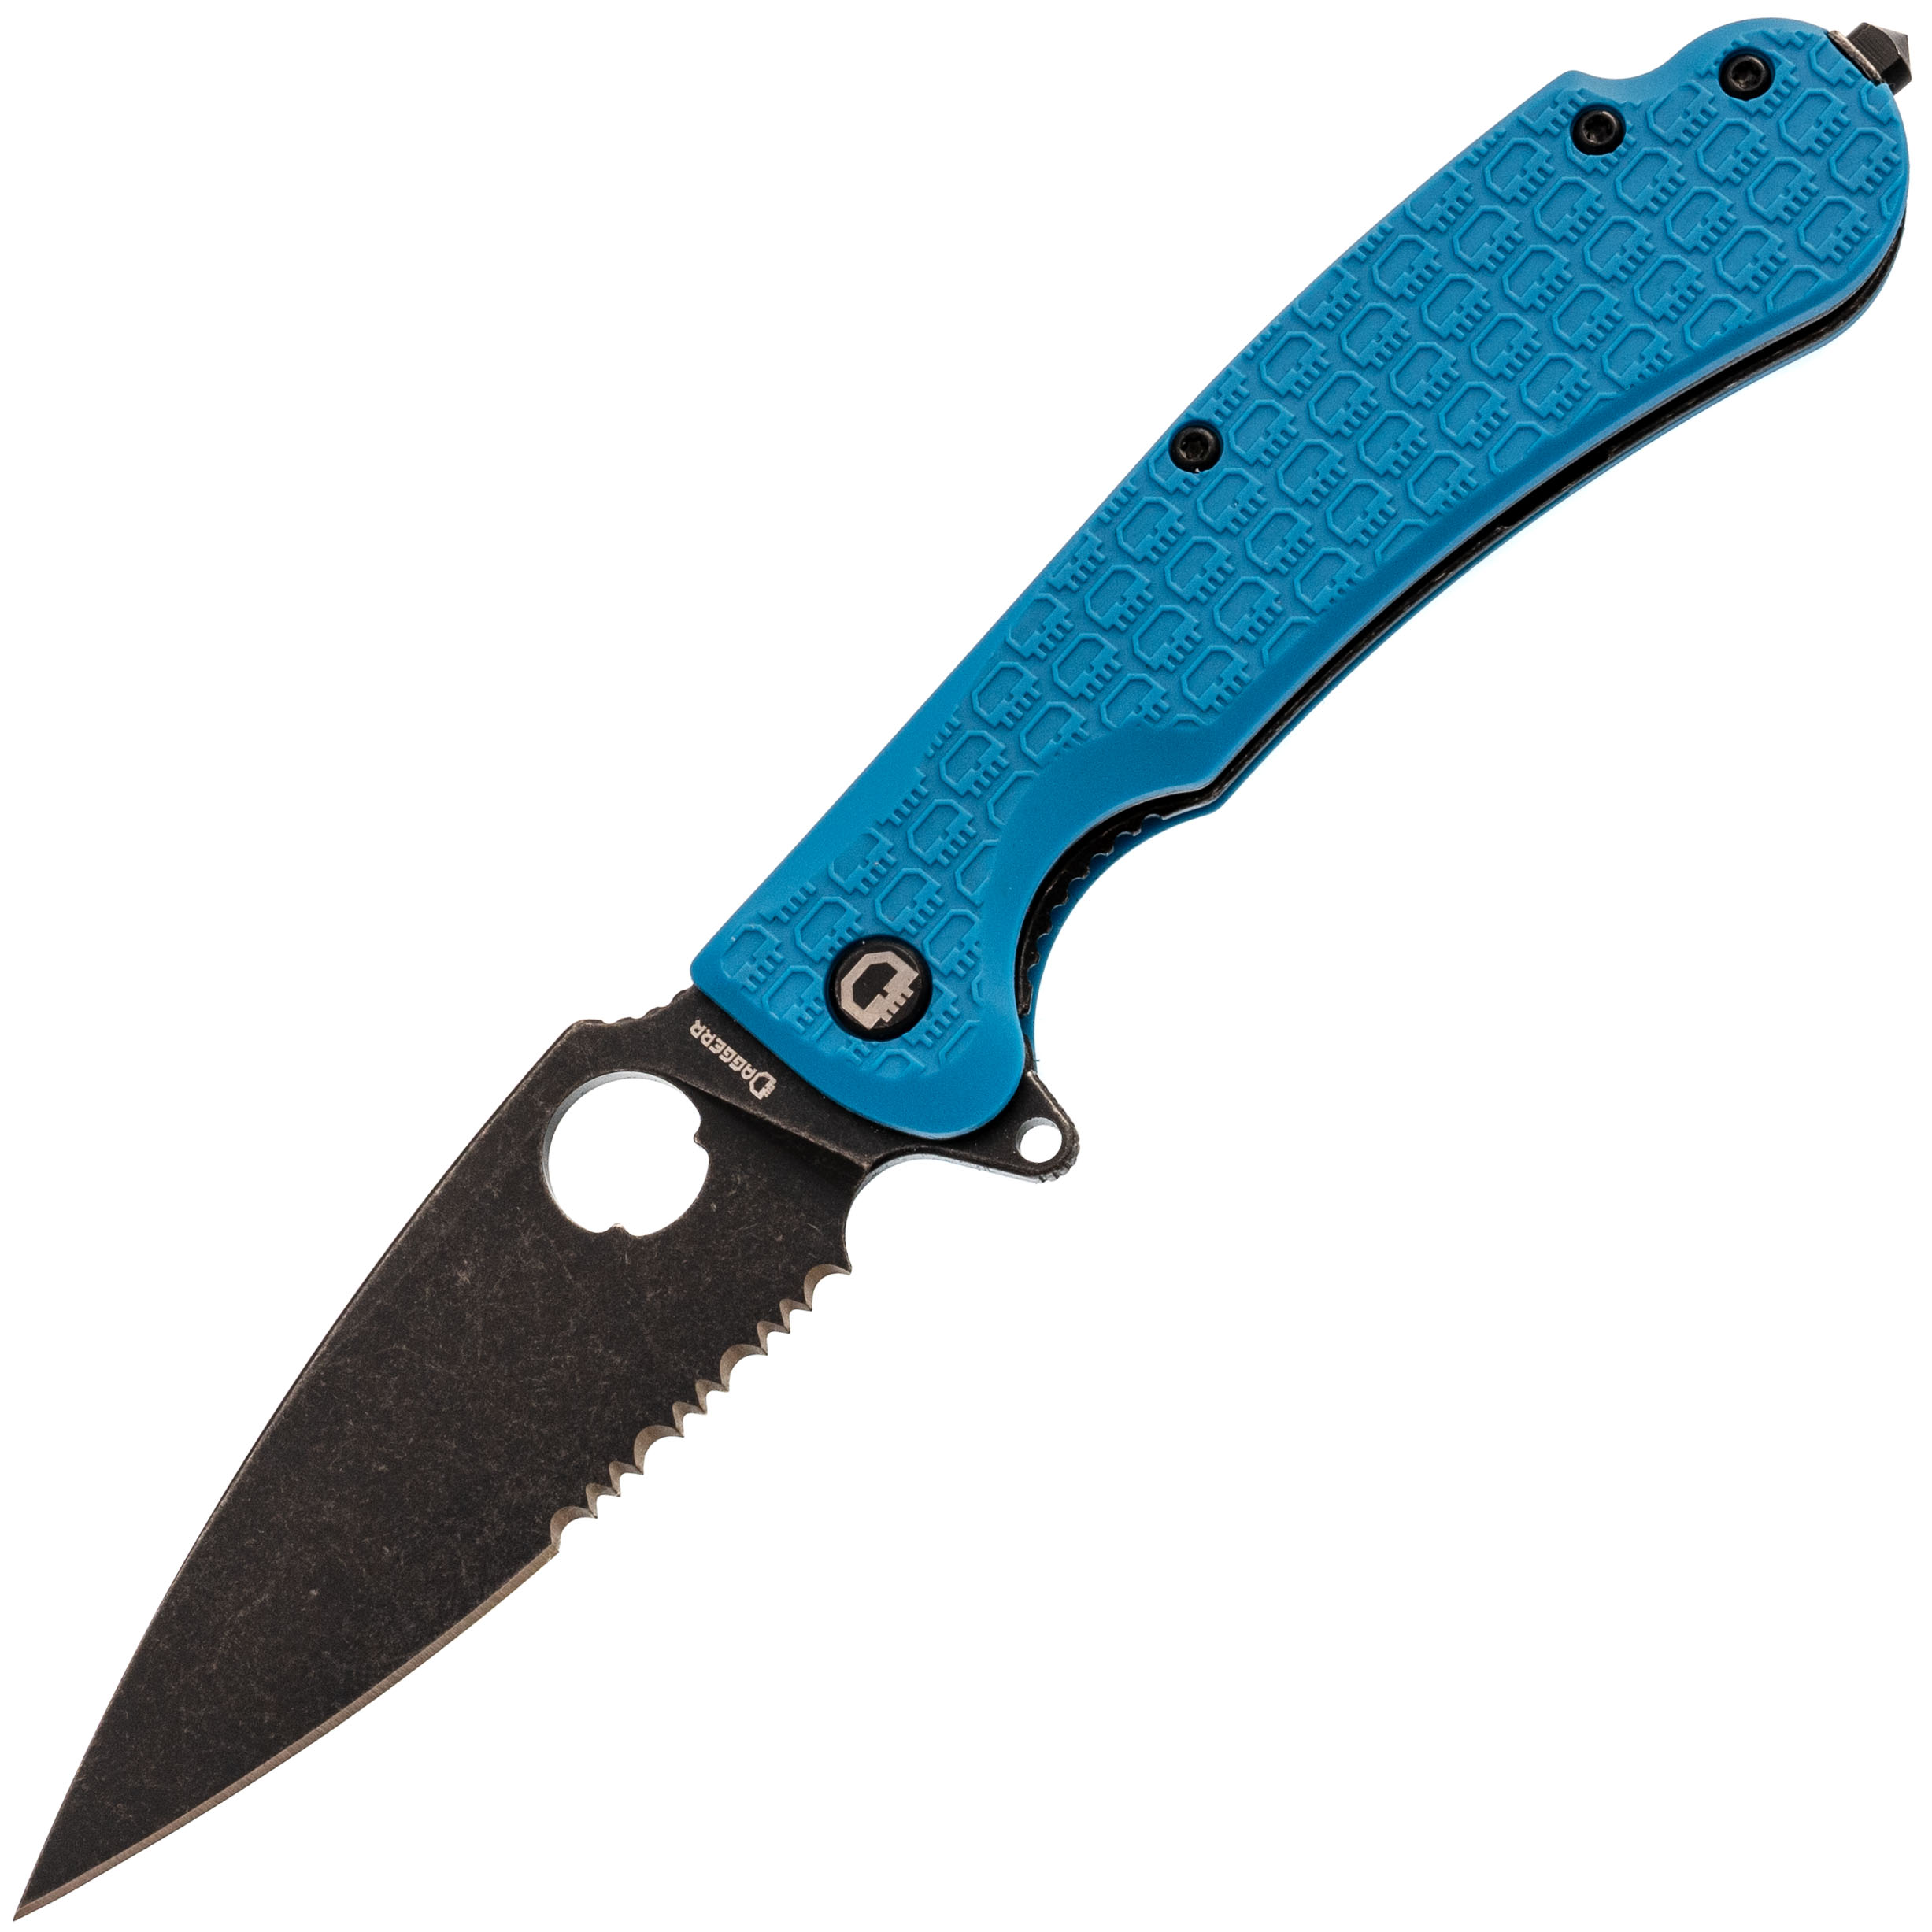 Складной нож Daggerr Resident Blue BW Serrated, сталь 8Cr14MoV, рукоять FRN складной нож we knife banter blue s35vn